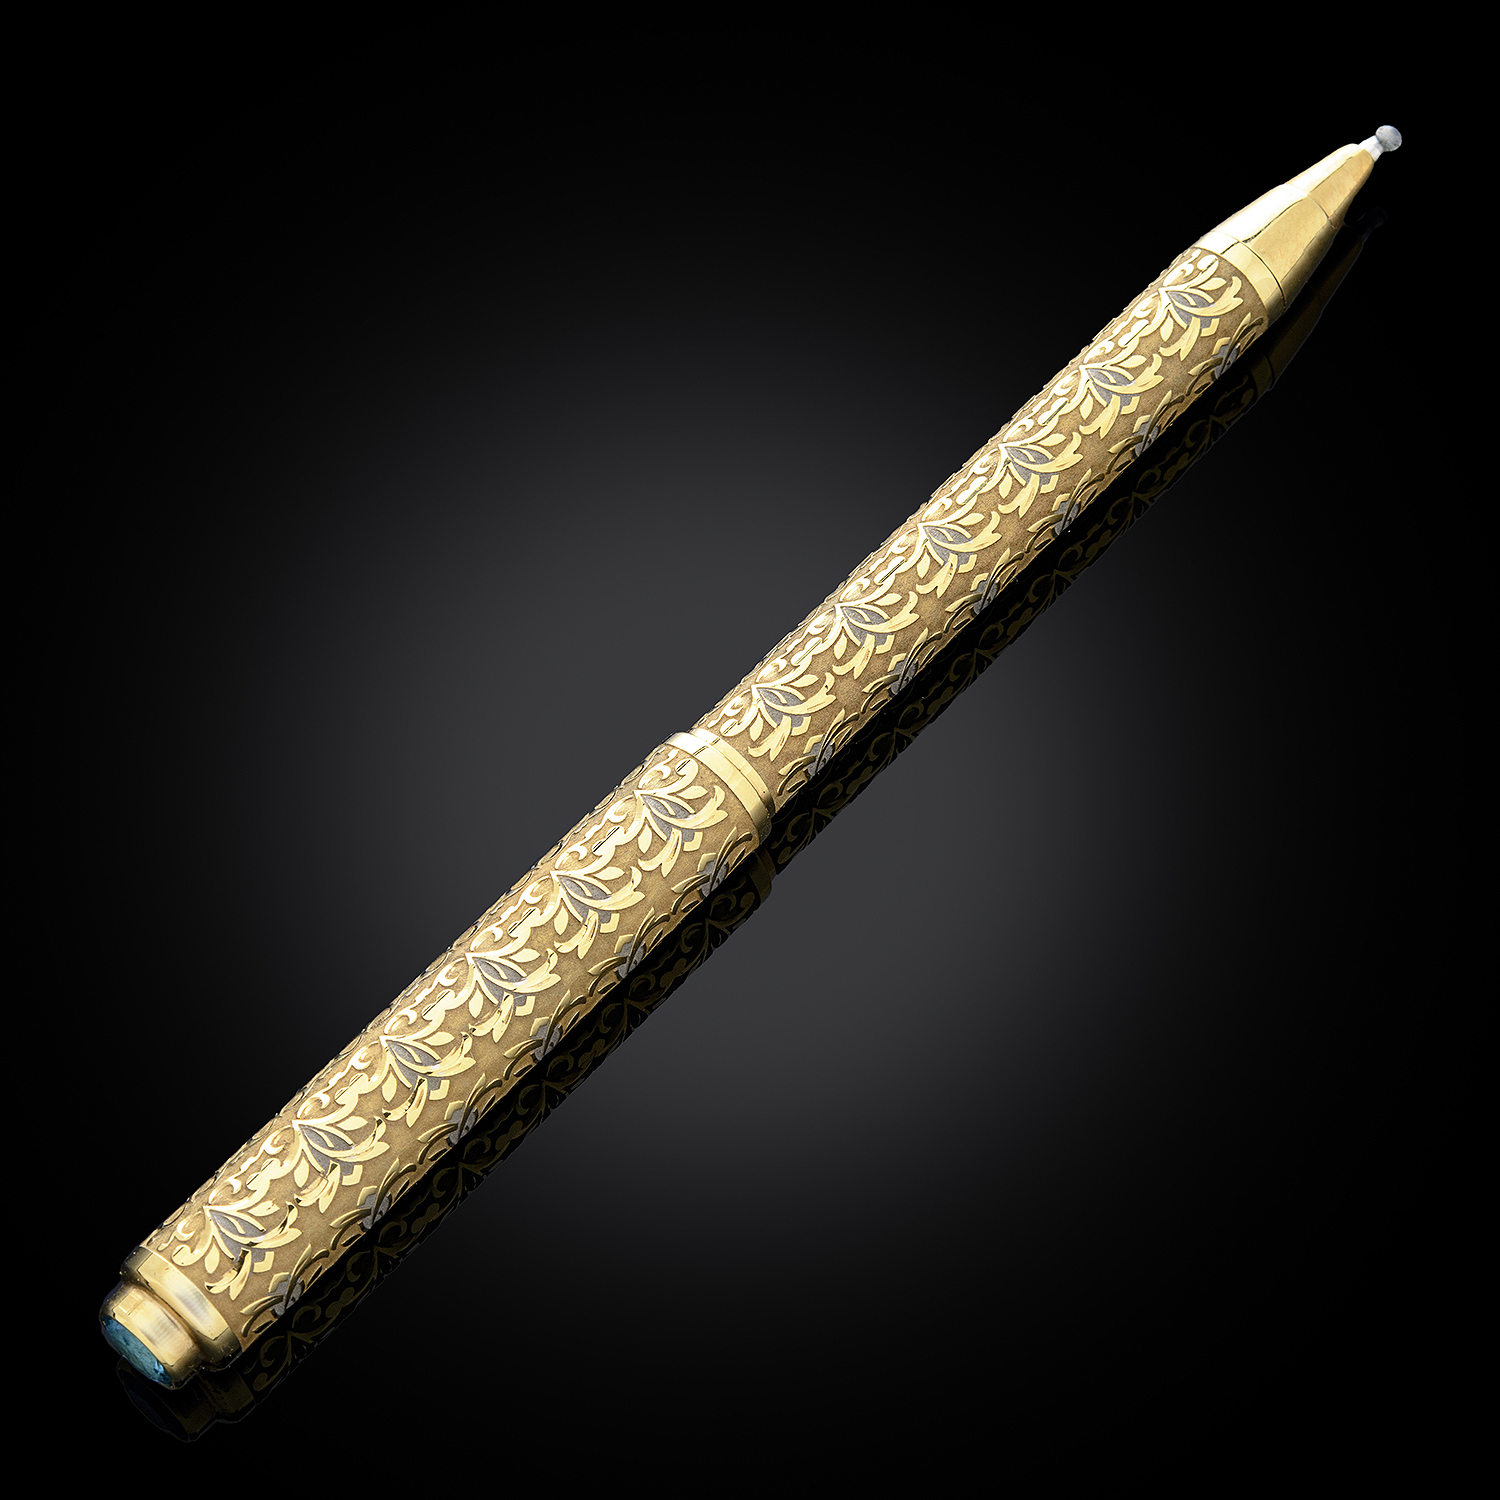  шариковая ручка. Златоуст, арт. 800693738 — 16250 руб .